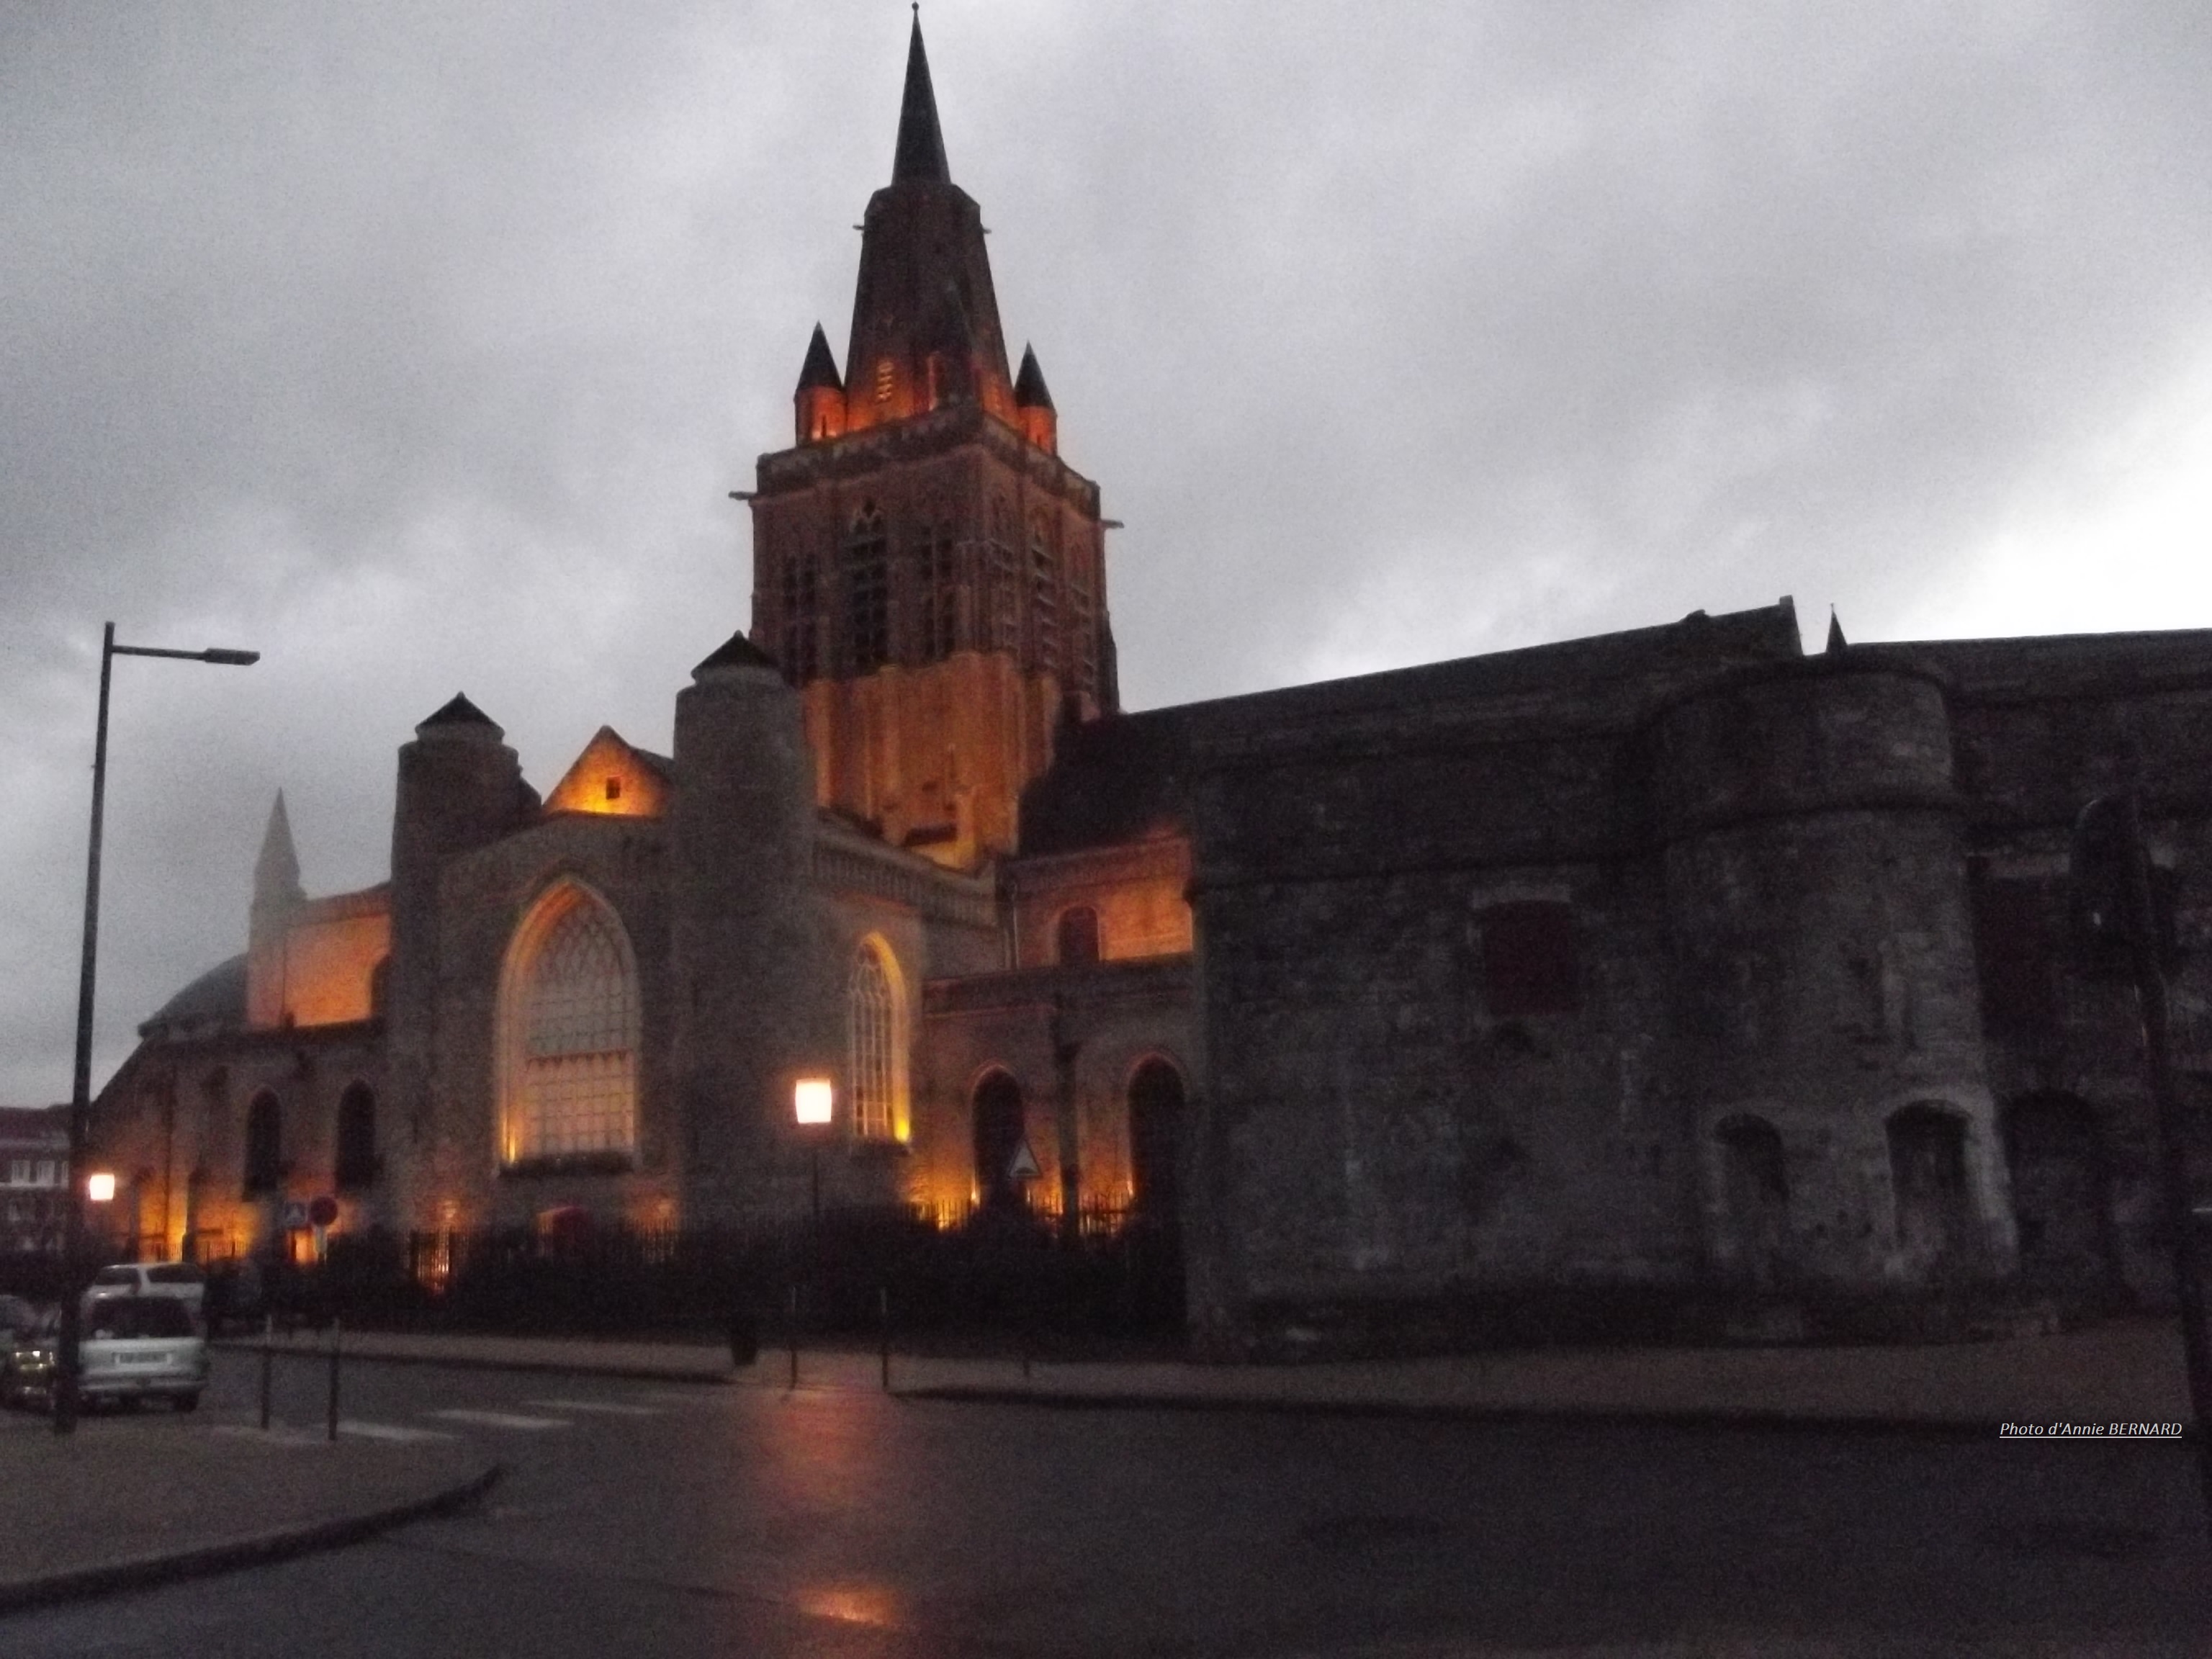 Illumination extérieure de l'église Notre-Dame de Calais